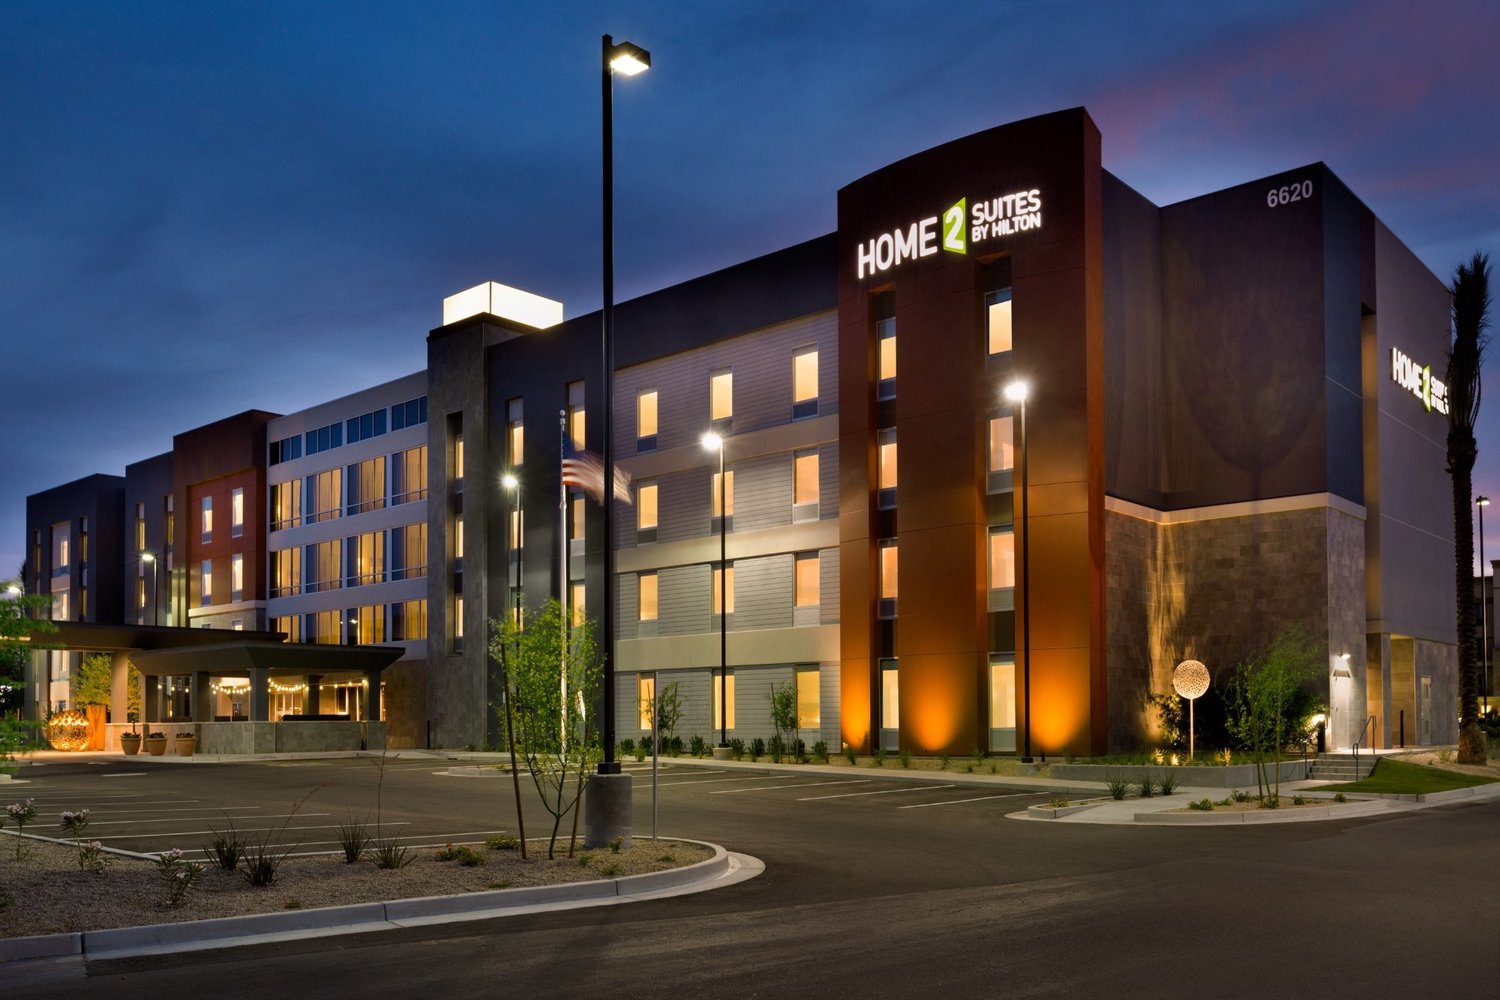 Home2 Suites Hilton Phoenix Glendale-Westgate  Glendale  Jobs